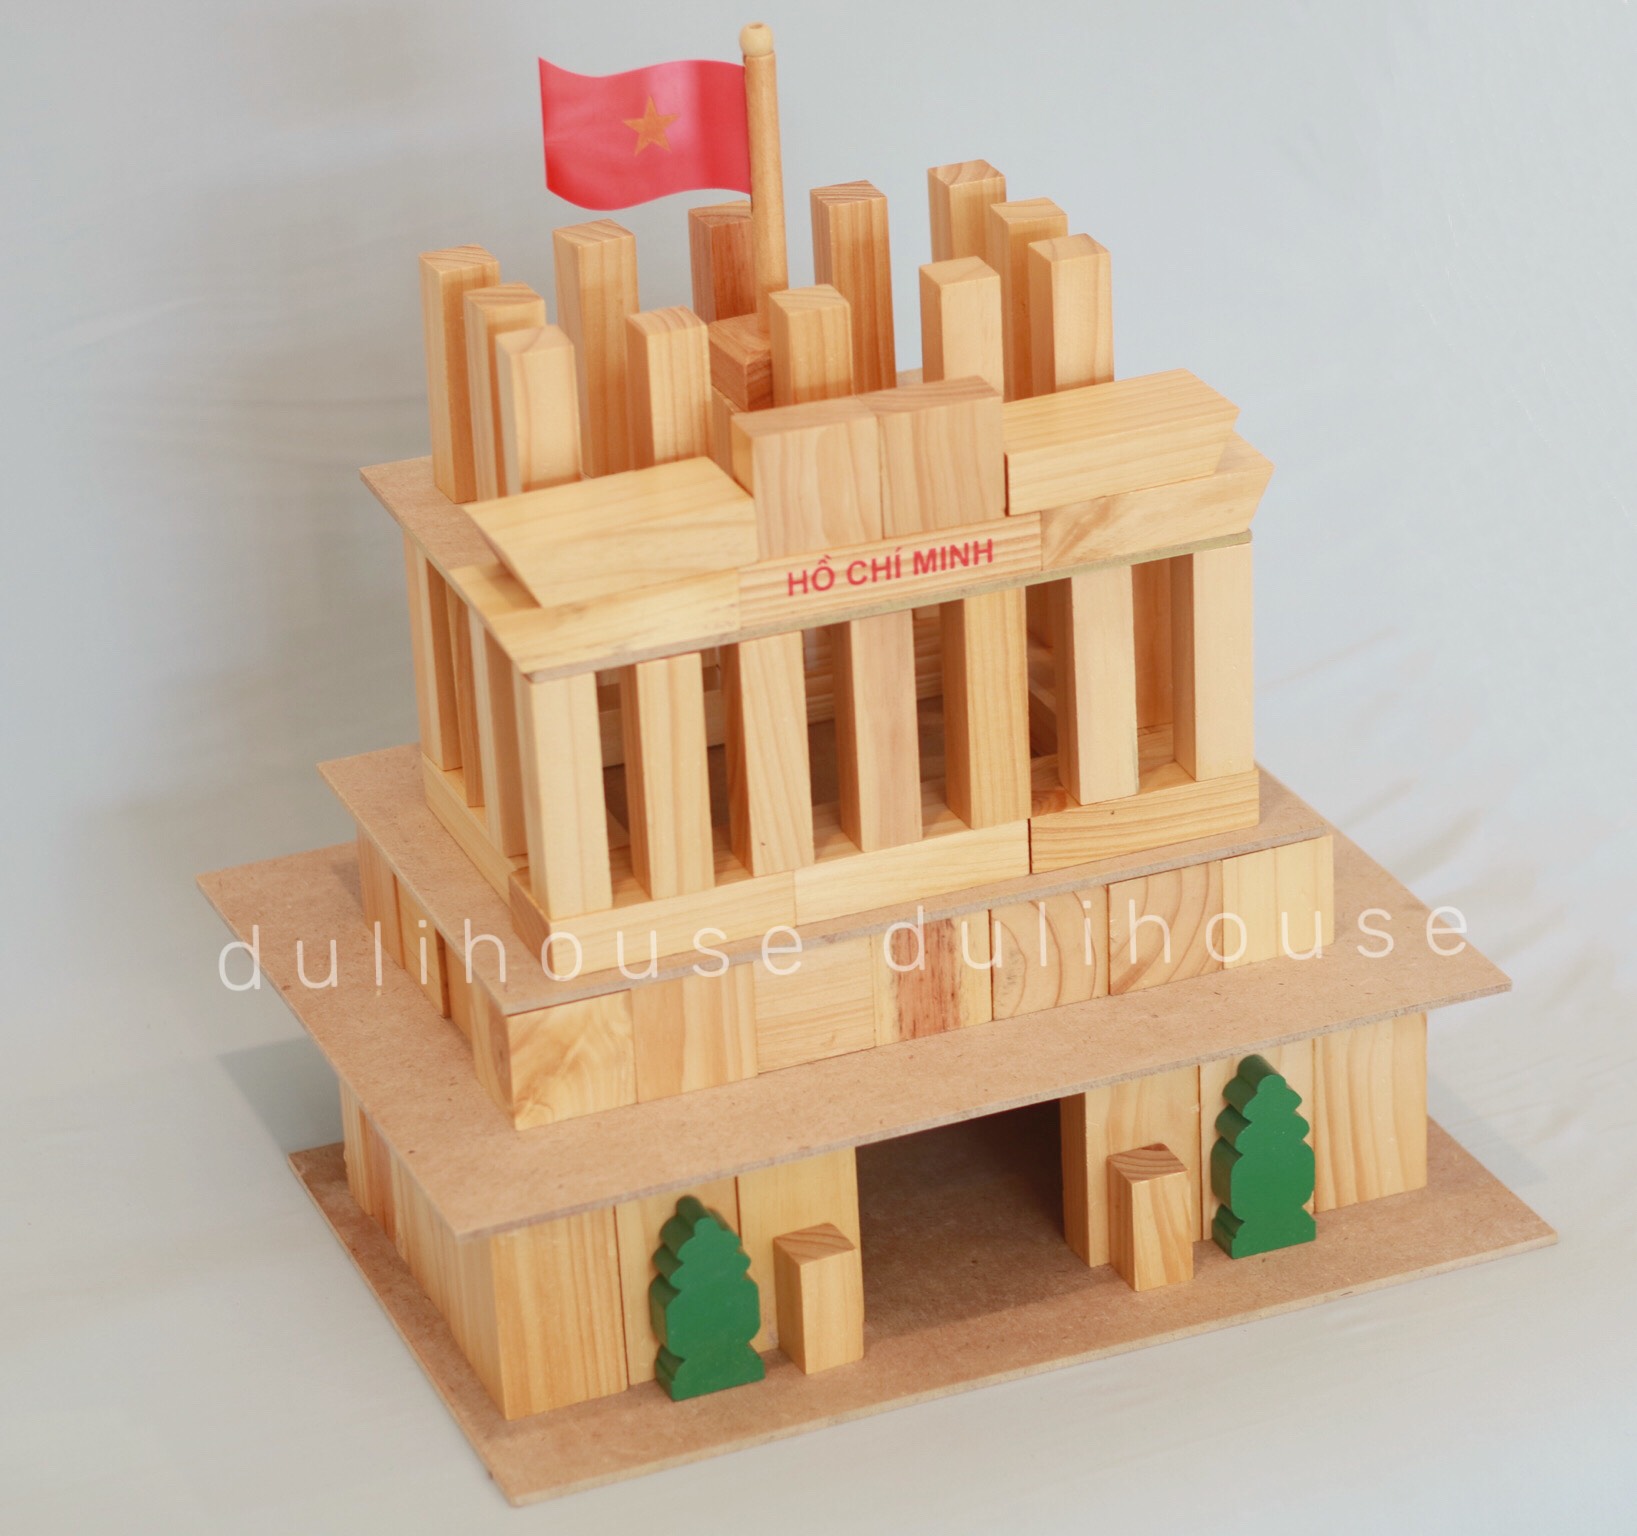 Đồ chơi gỗ bộ xếp hình xây dựng Lăng Bác giúp bé nhận biết hình khối phát triển tư duy logic suy luận hình ảnh, tăng khả năng khám phá thế giới xung quanh - Sản xuất tại Việt Nam